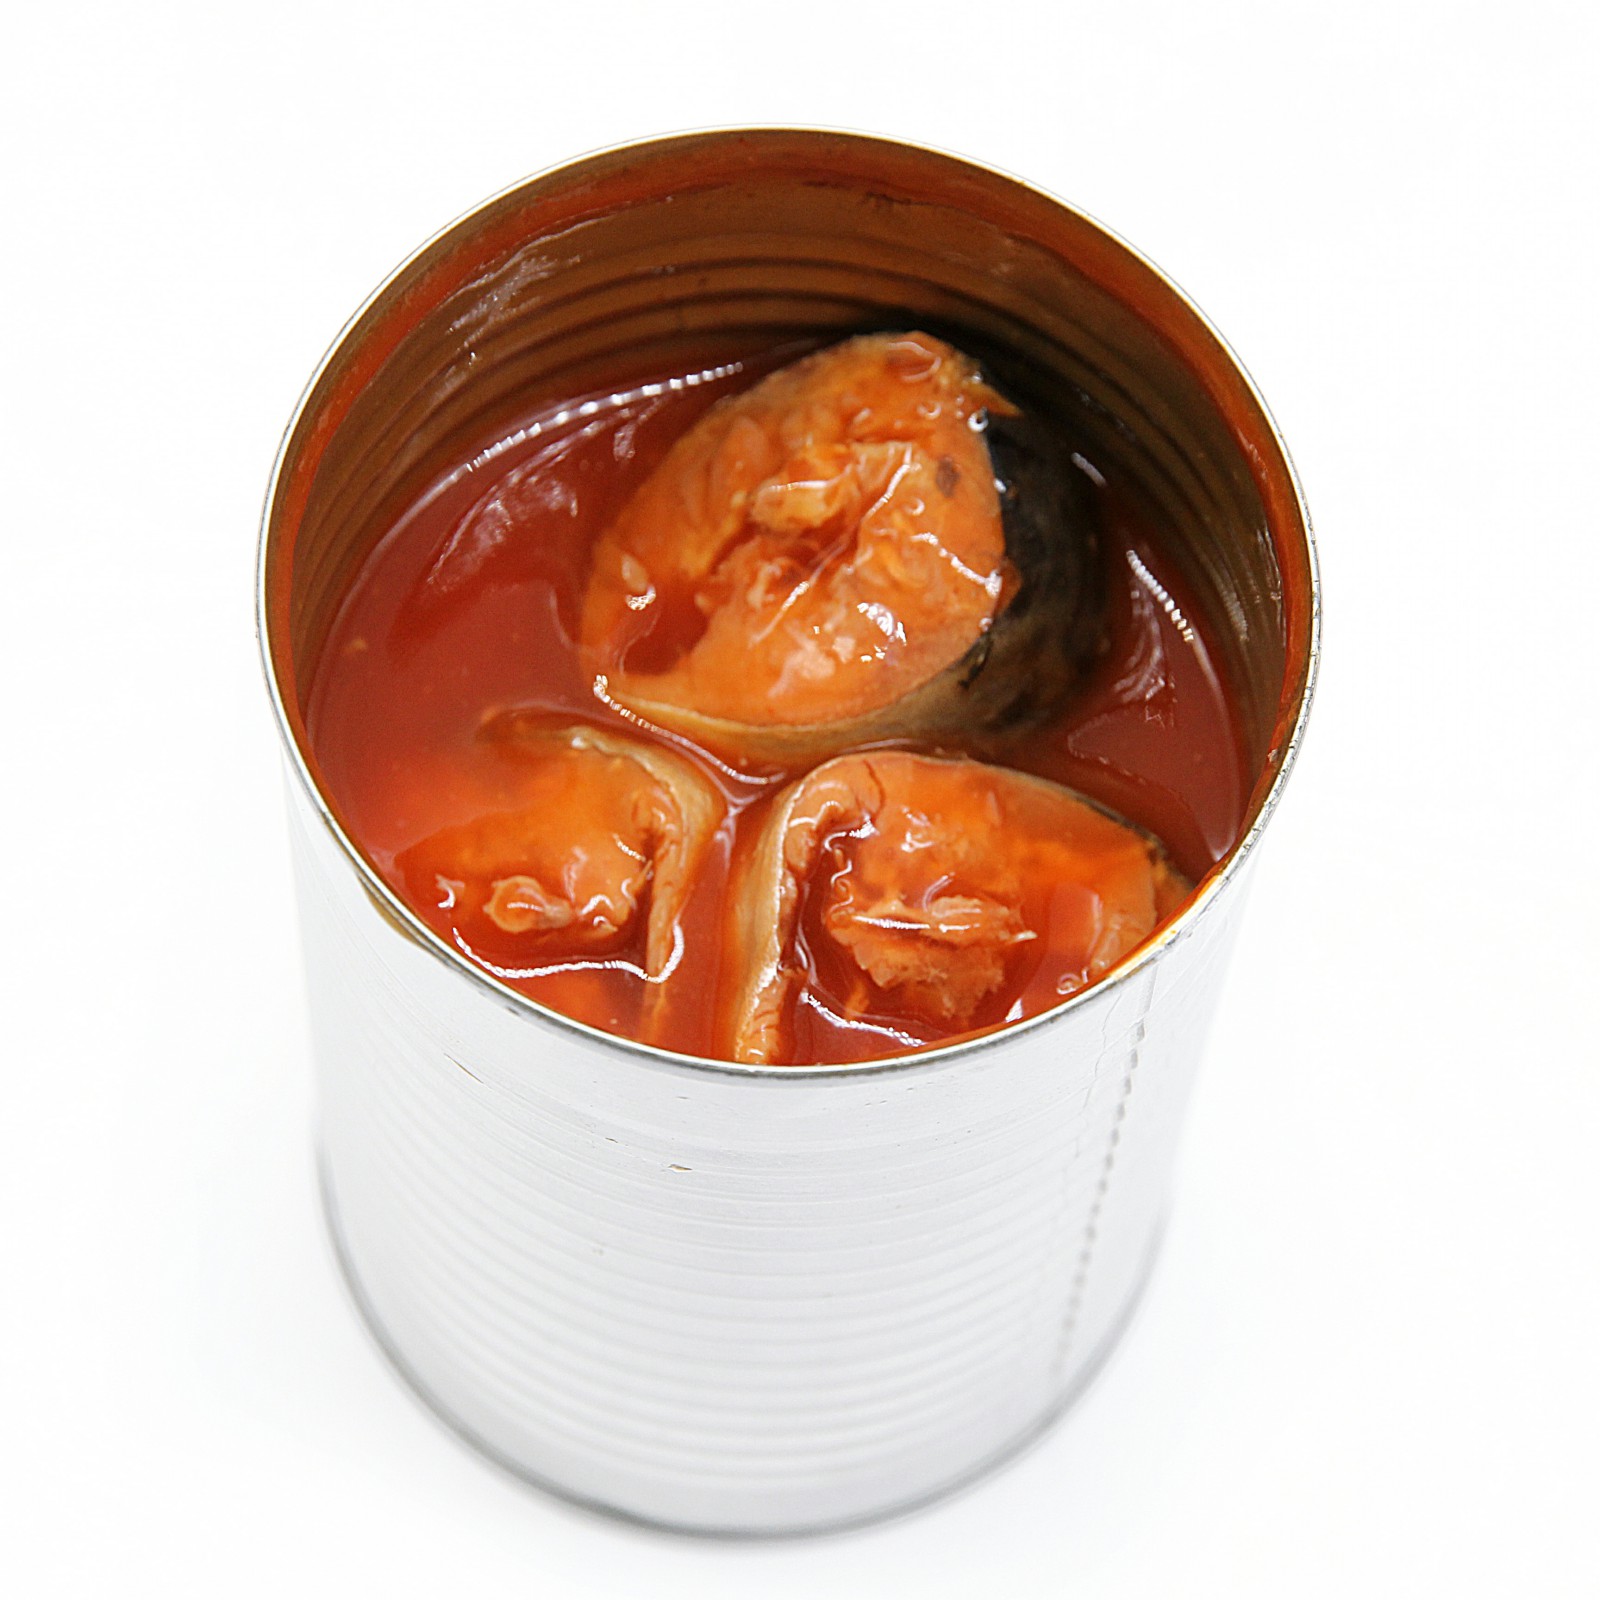 Sardina enlatada en salsa de tomate 425g